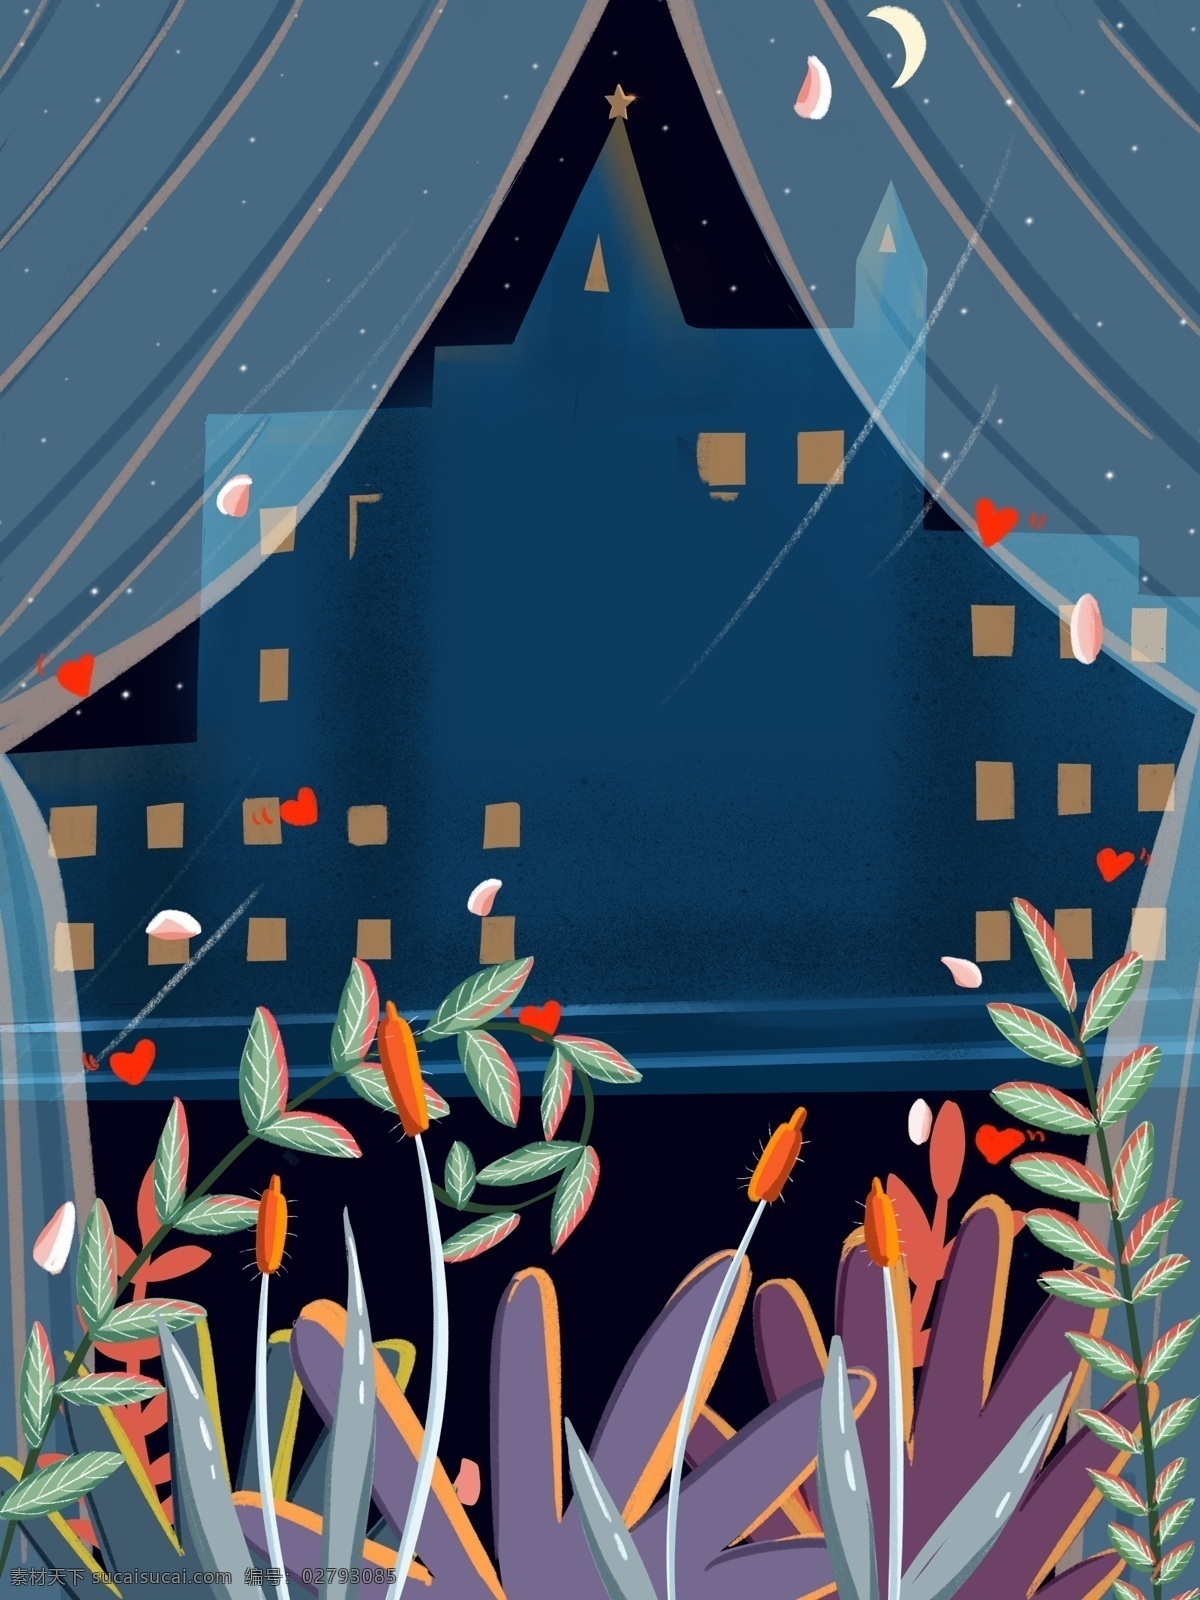 蓝色 手绘 窗外 风景 插画 背景 窗外风景 植物 建筑 通用背景 广告背景 背景素材 彩色背景